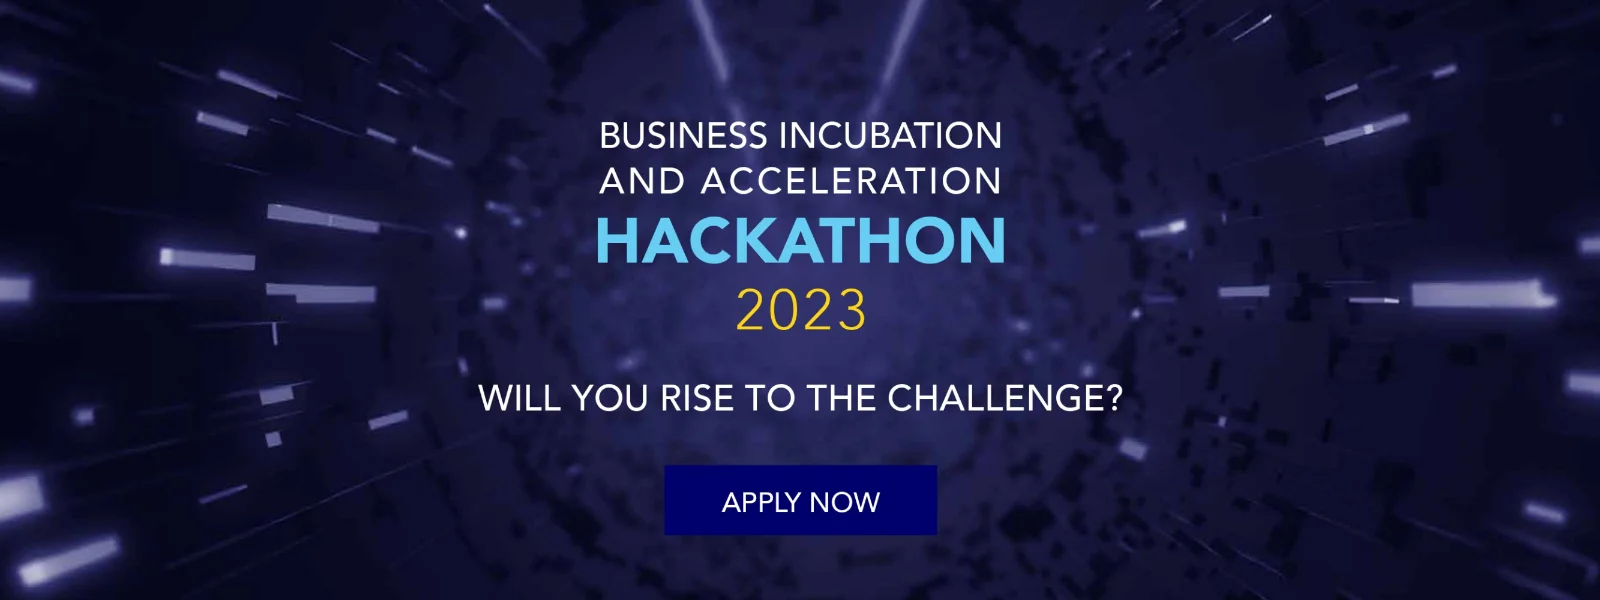 Business Incubation & Acceleration Hackathon